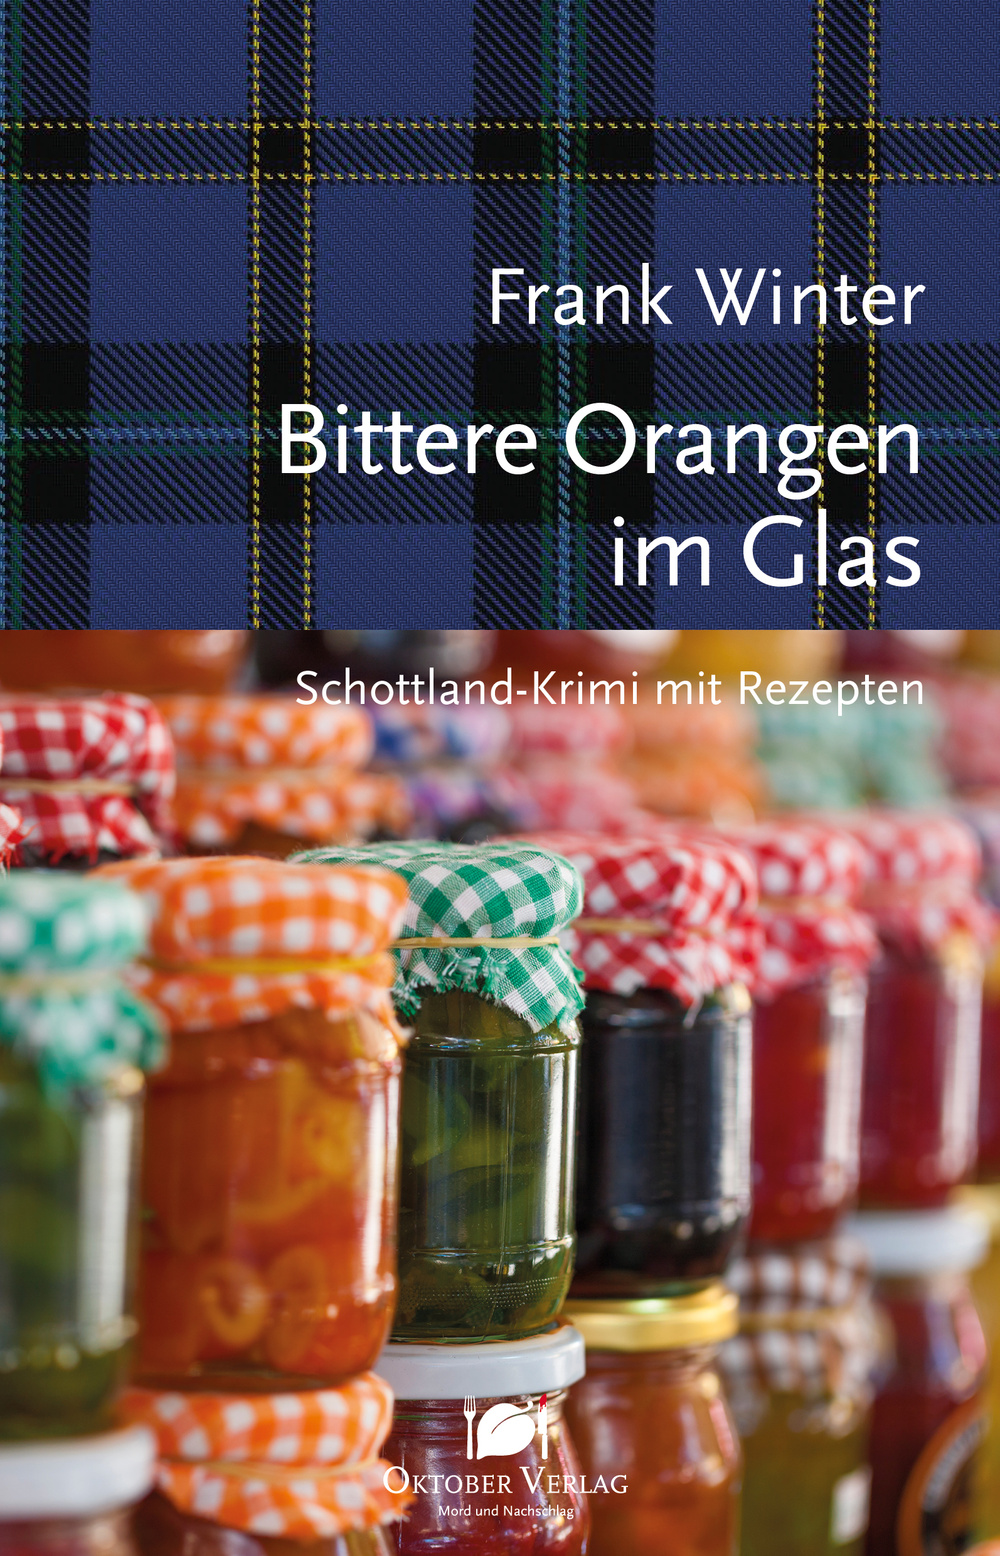 Frank Winter Bittere Orangen im Glas Schottland Krimi mit Rezepten